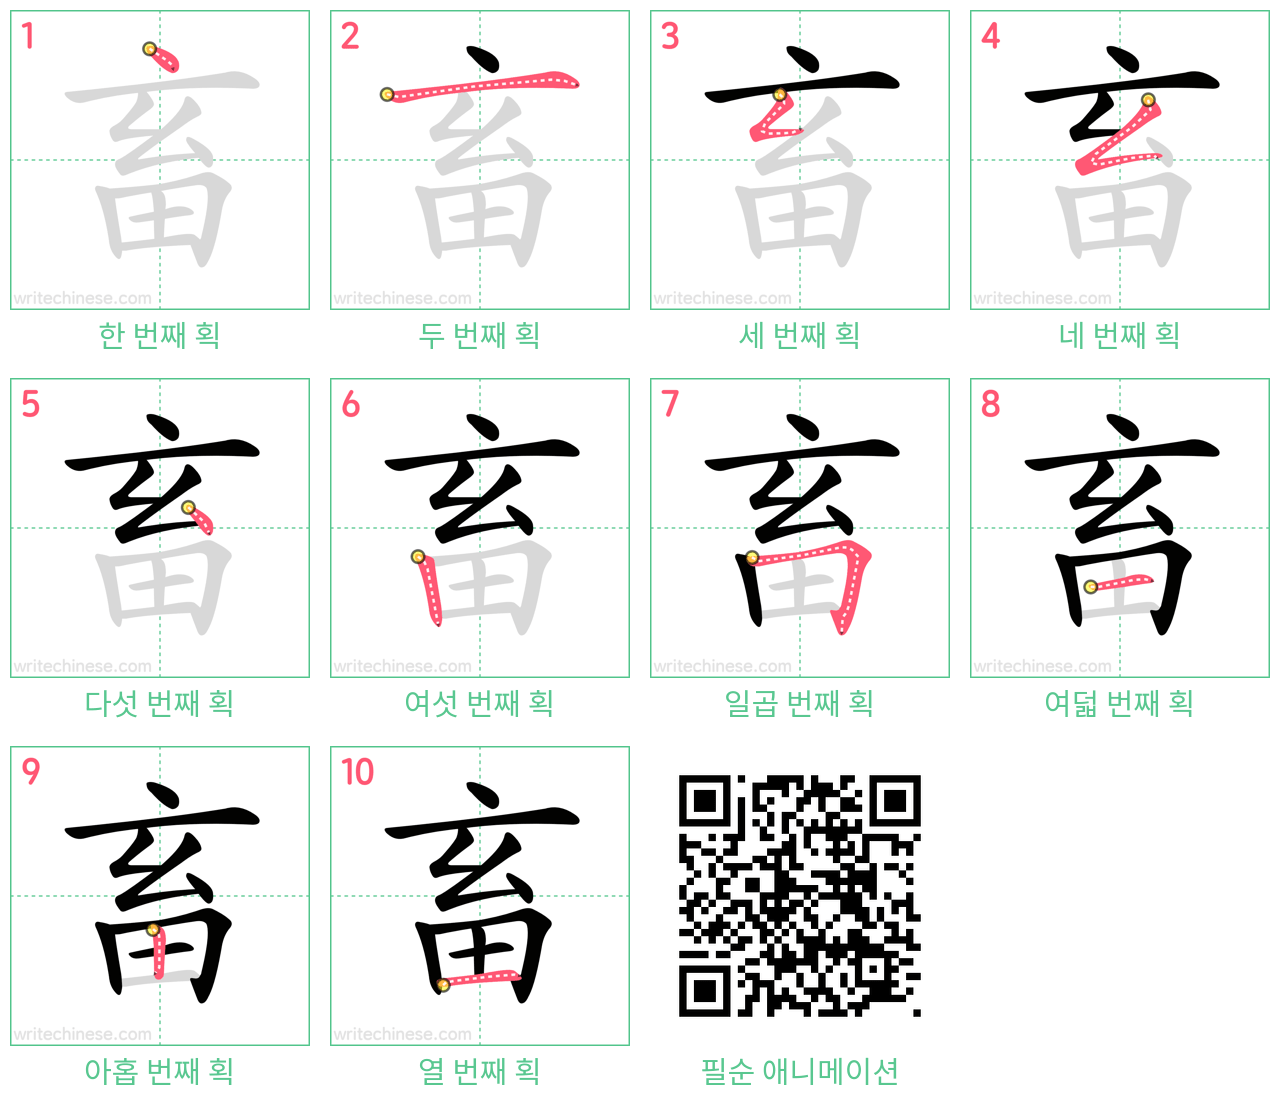 畜 step-by-step stroke order diagrams